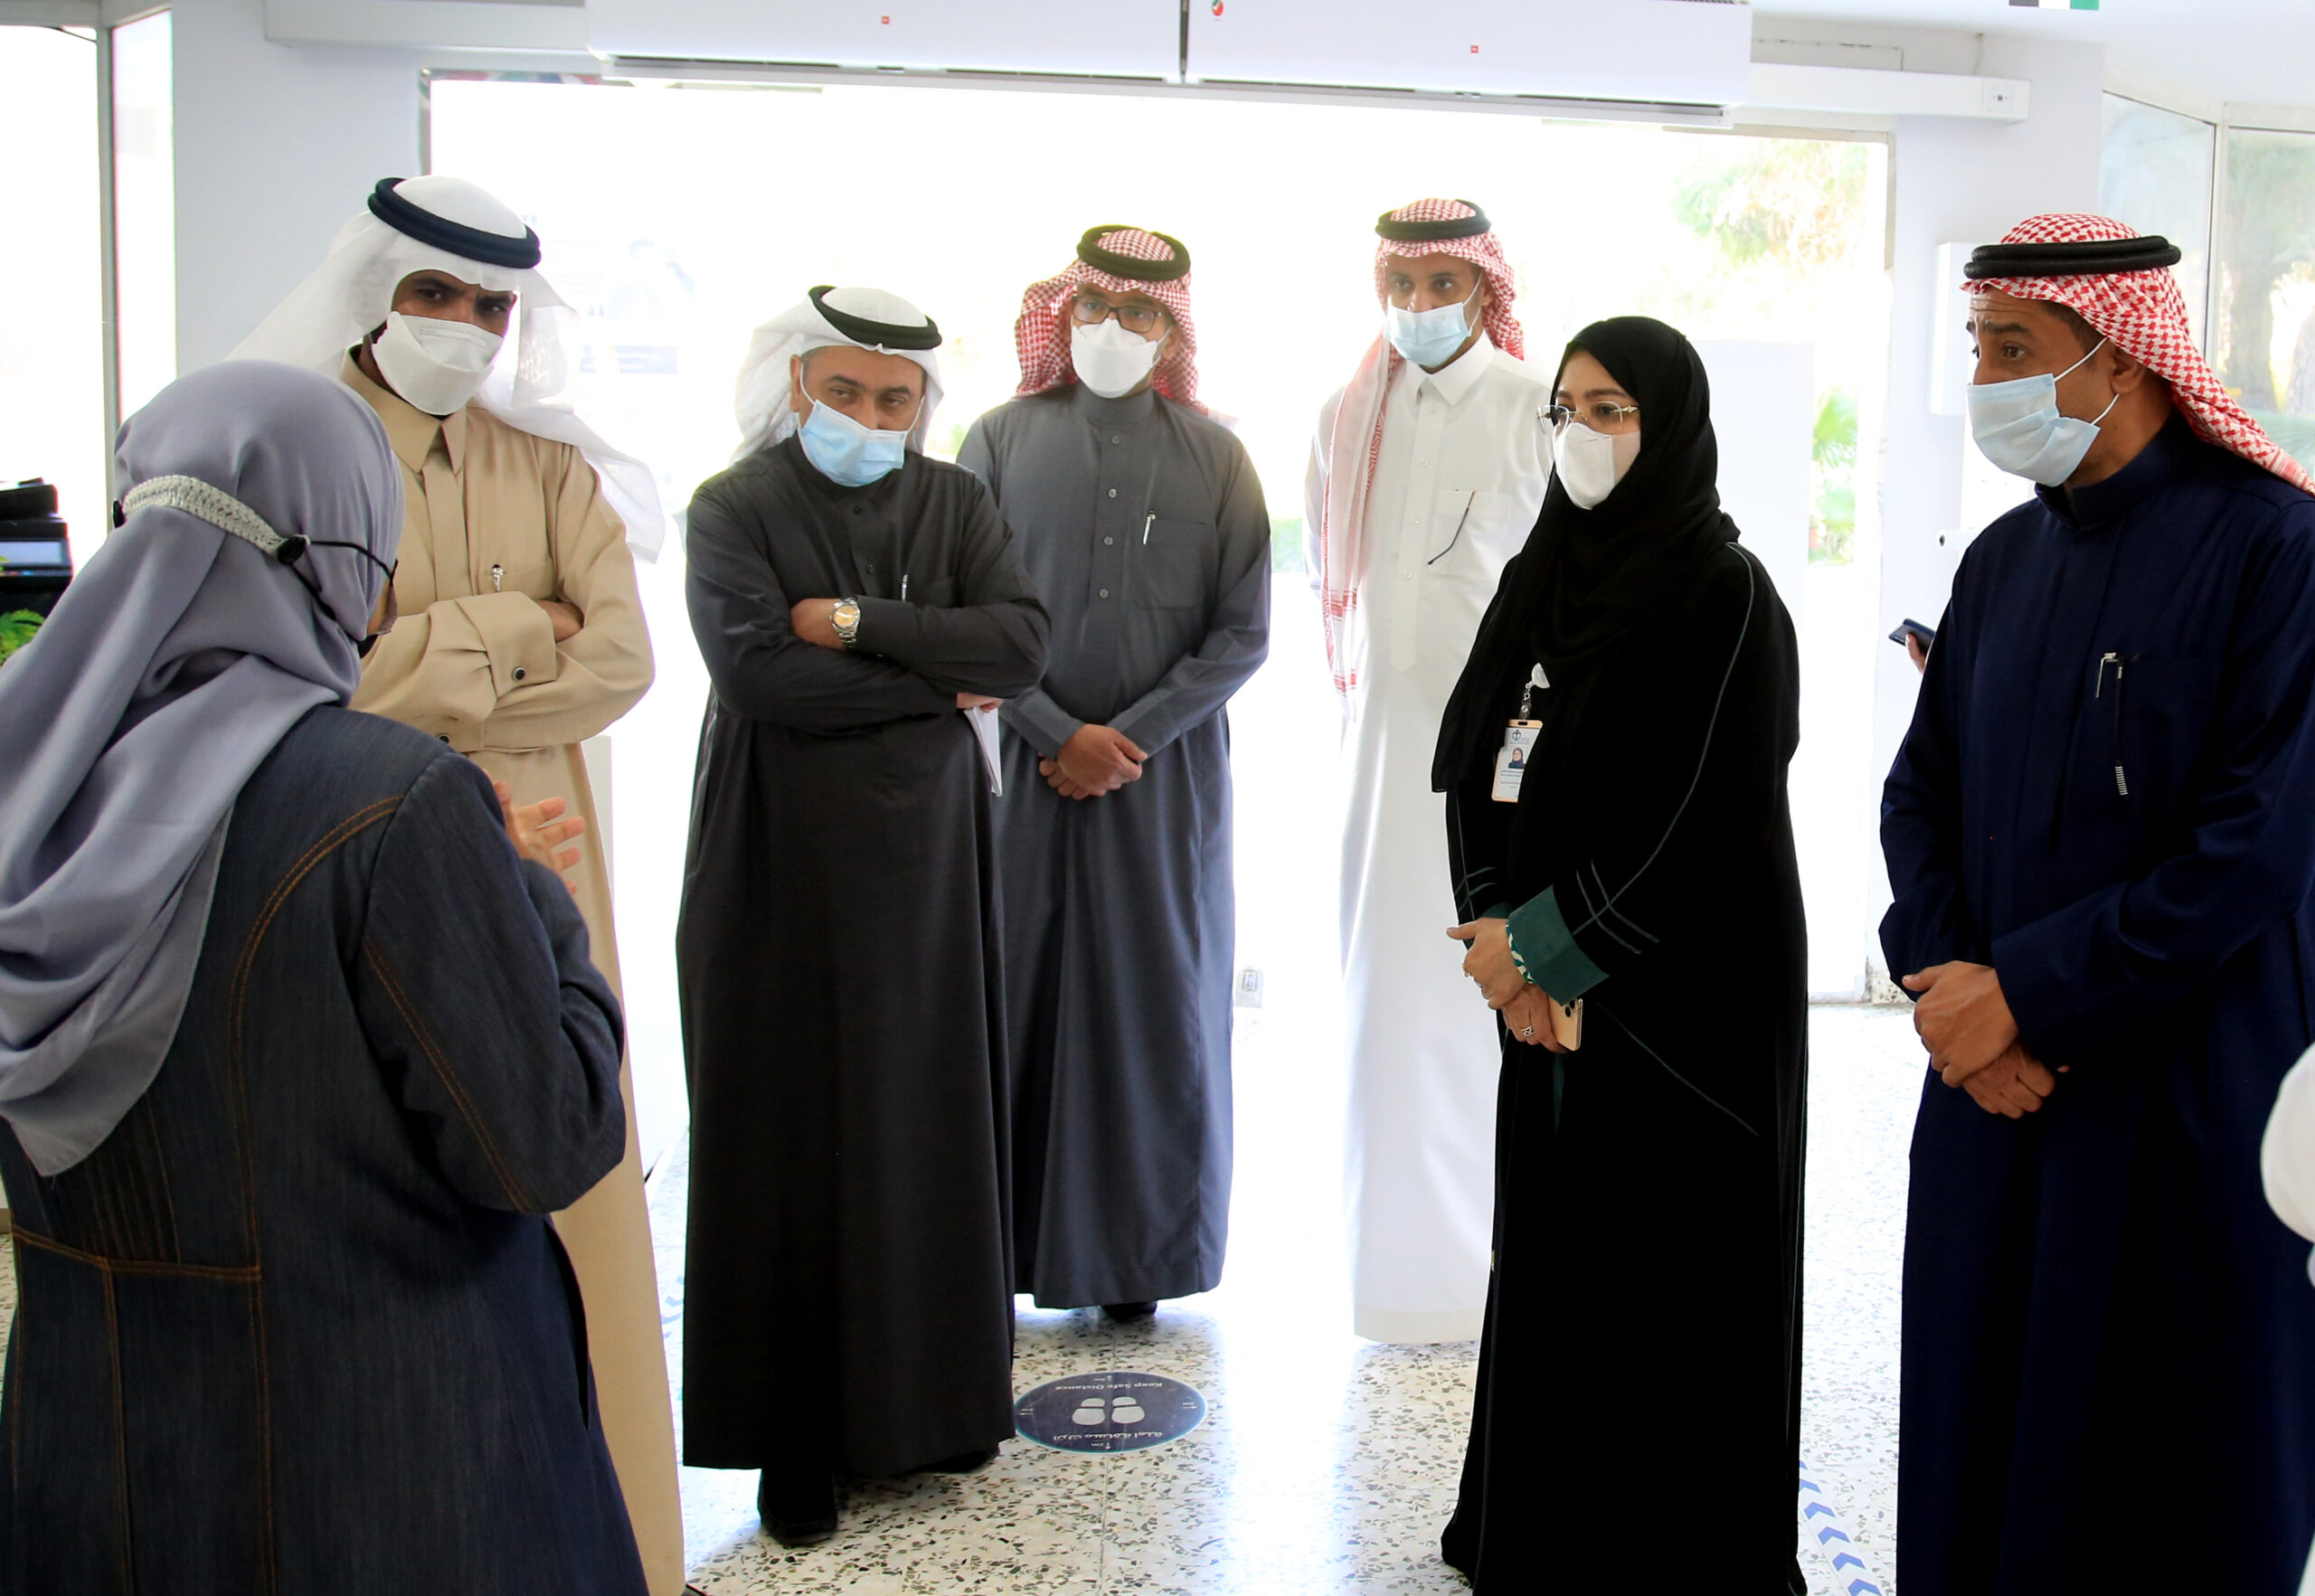 أبوابُ الخدمات الإنسانية  مُشرَعَة لاستقبال الطلبة السعوديين من ذوي الإعاقة